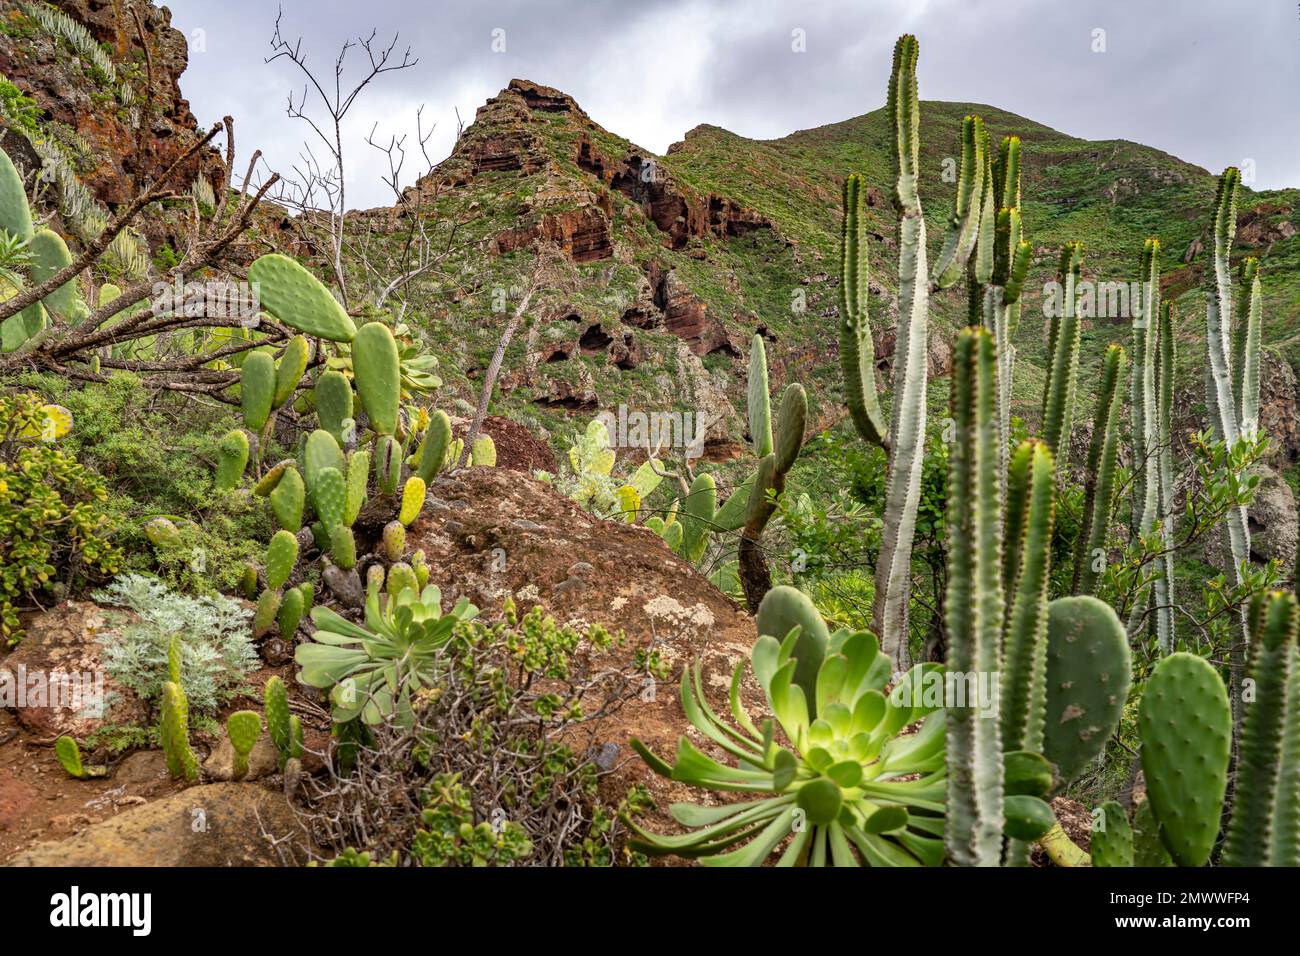 Landschaft am Wanderweg von Punta del Hidalgo nach Chinamada,  Teneriffa, Kanarische Inseln, Spanien |  Landscape around the hiking trail from Punta d Stock Photo